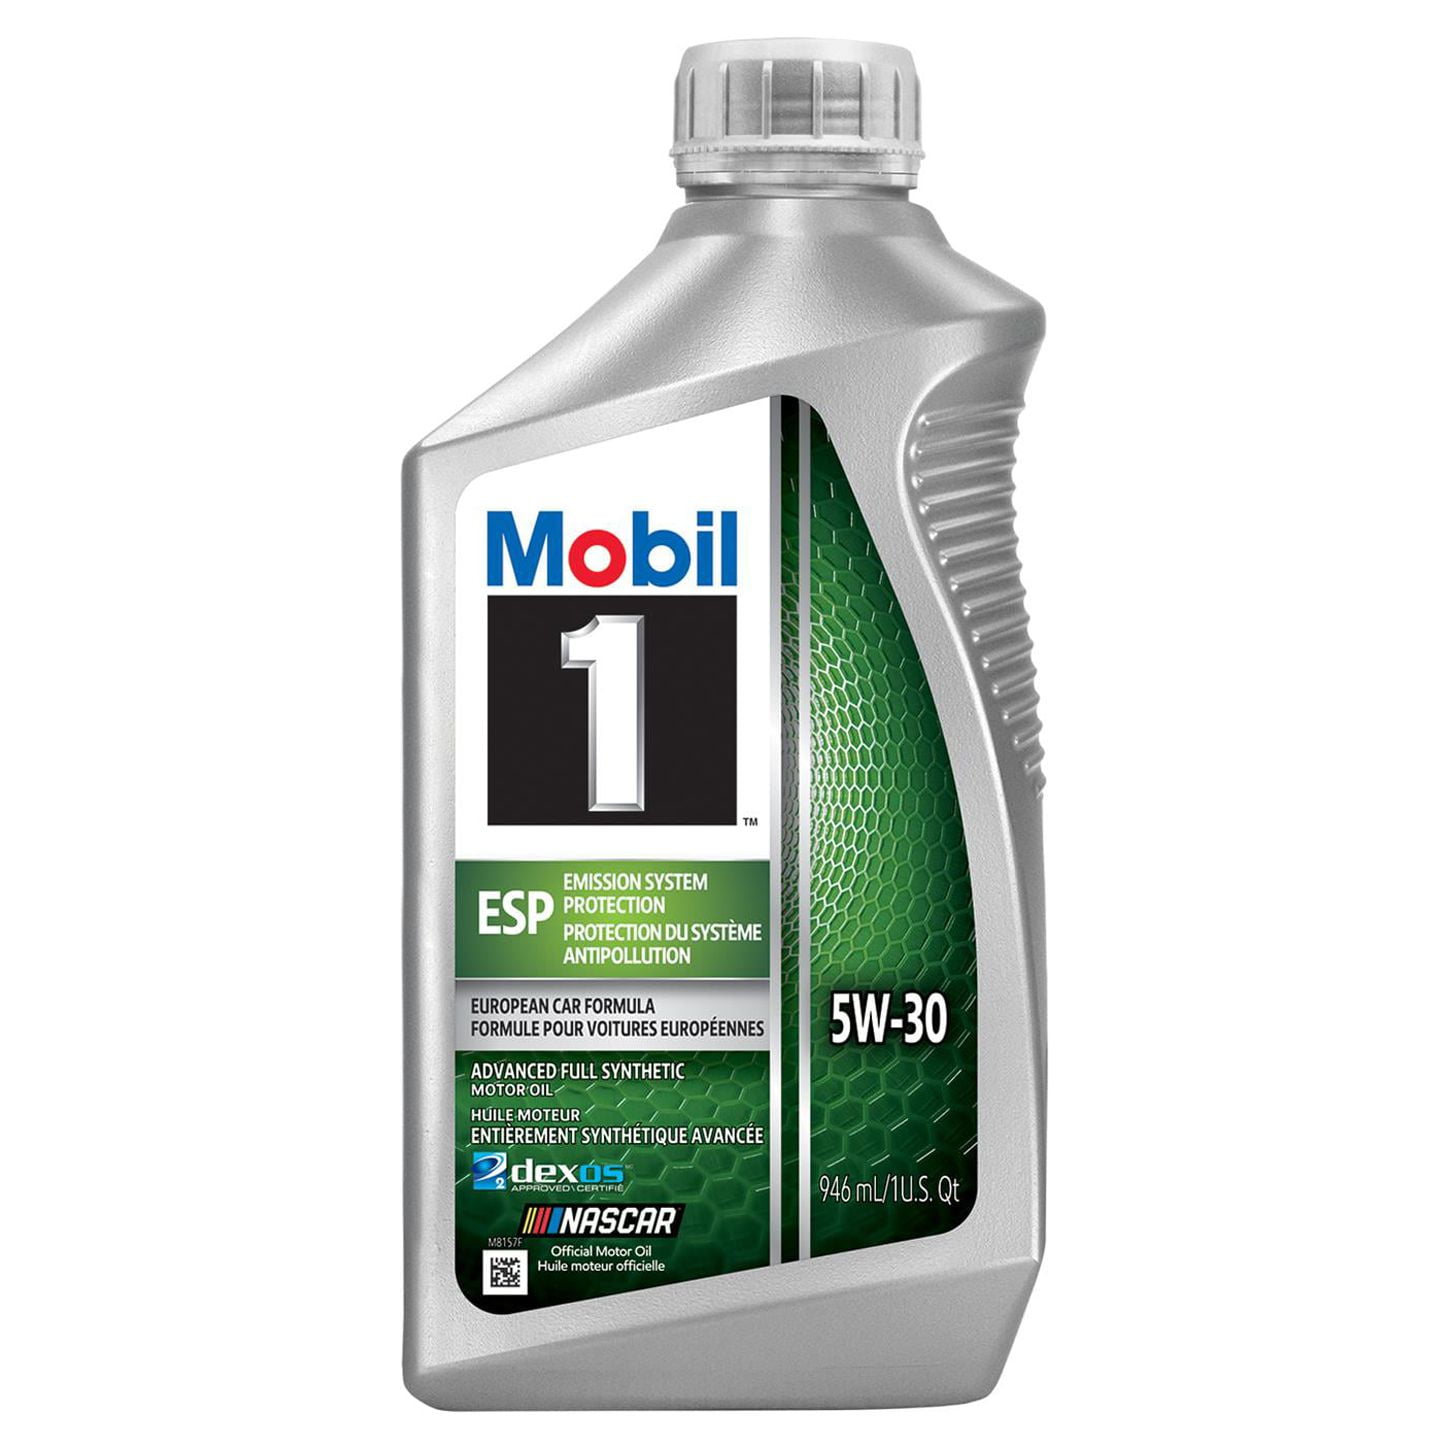 Mobil 1 124044 ESP Formula Engine Oil 5W30 1 Quart Bottles Set of 6 